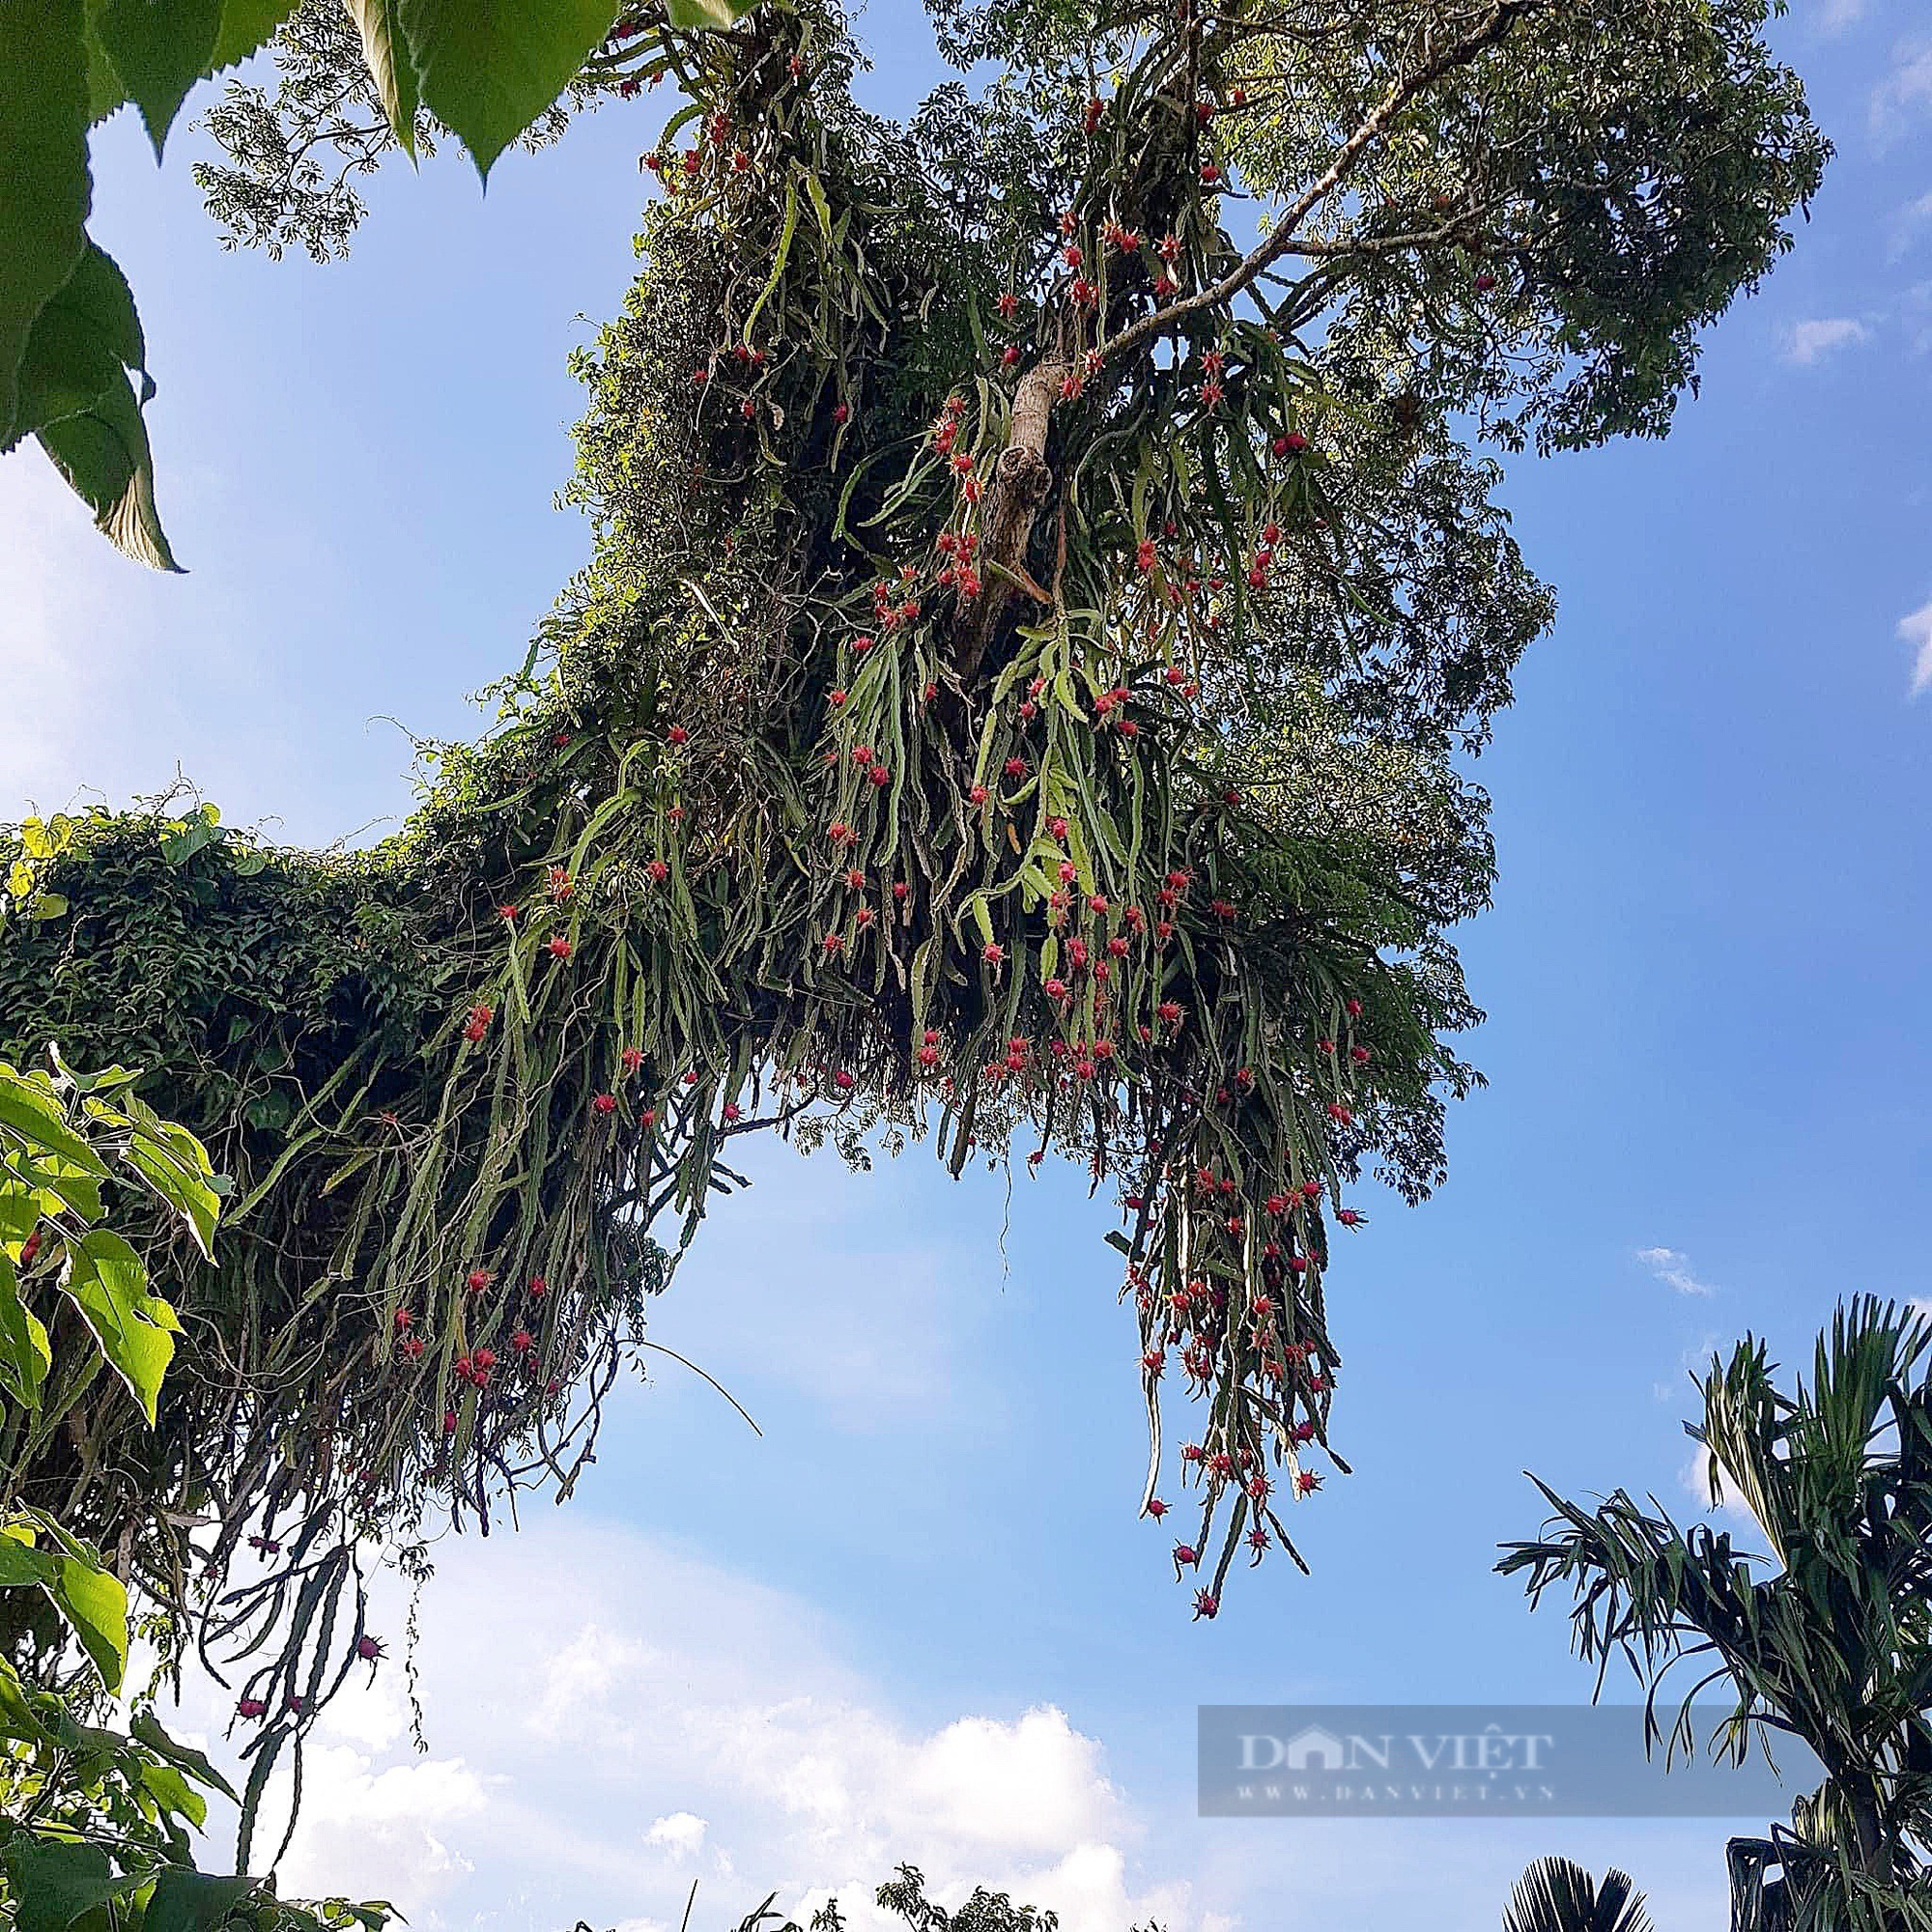 Kỳ lạ một cây cao hơn 20m, hình dạng giống con rồng có râu đang bay trên trời ở Đắk Lắk - Ảnh 3.